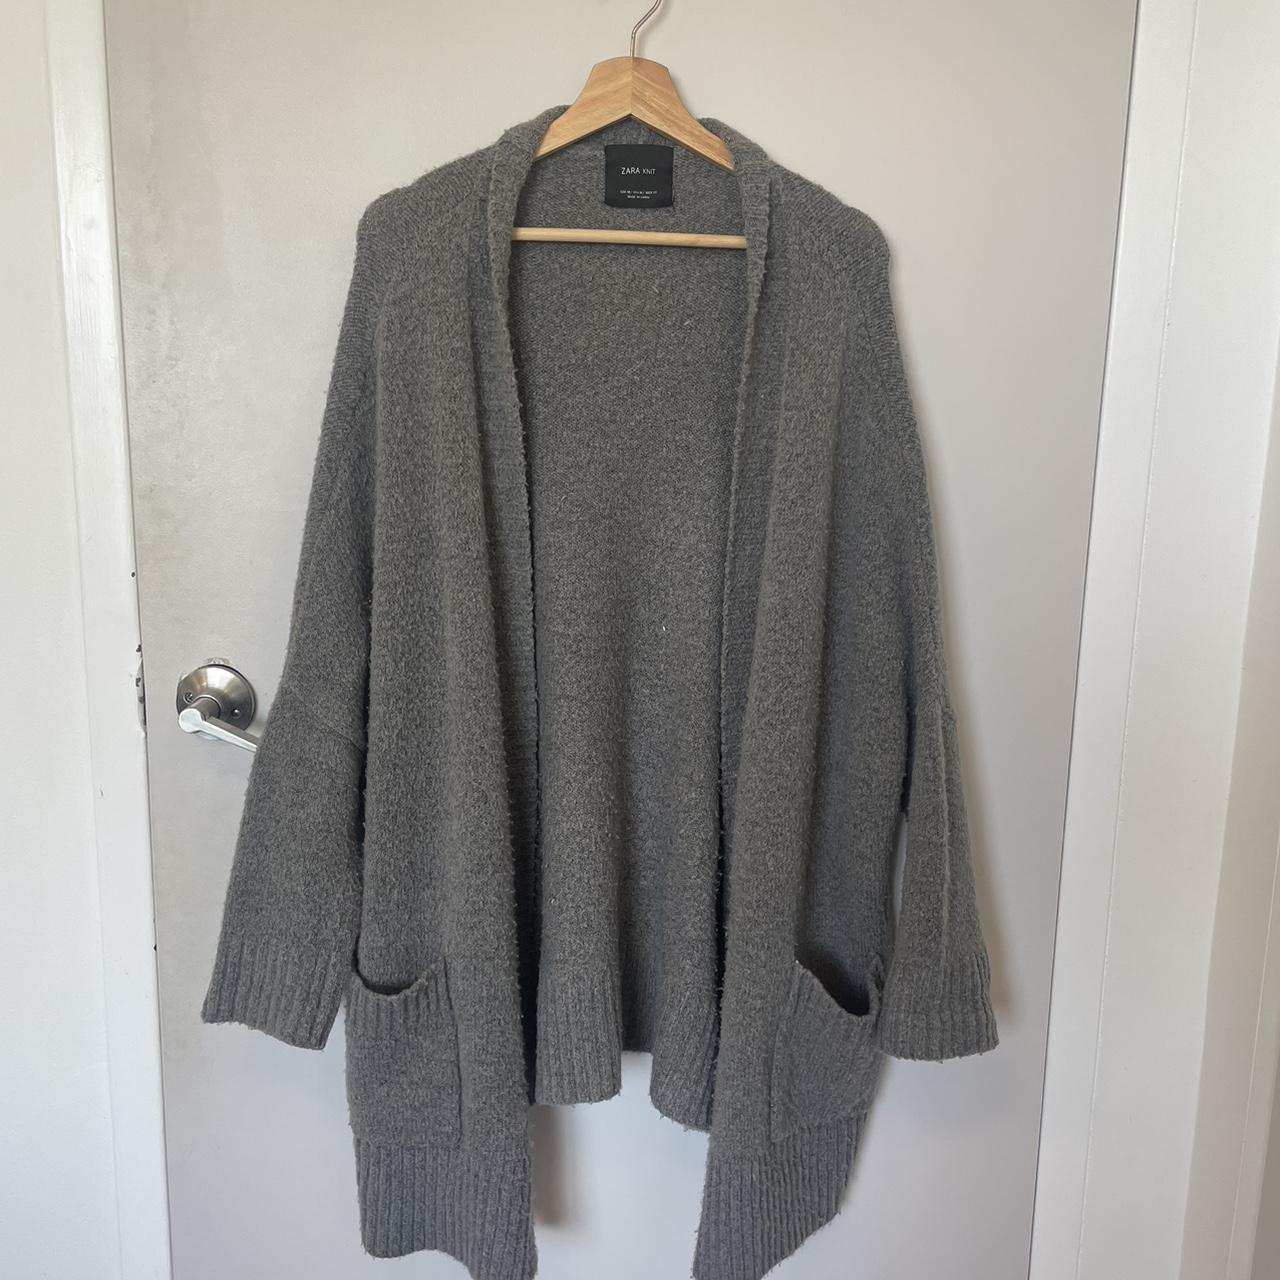 Zara grey oversized knit cardigan - Depop